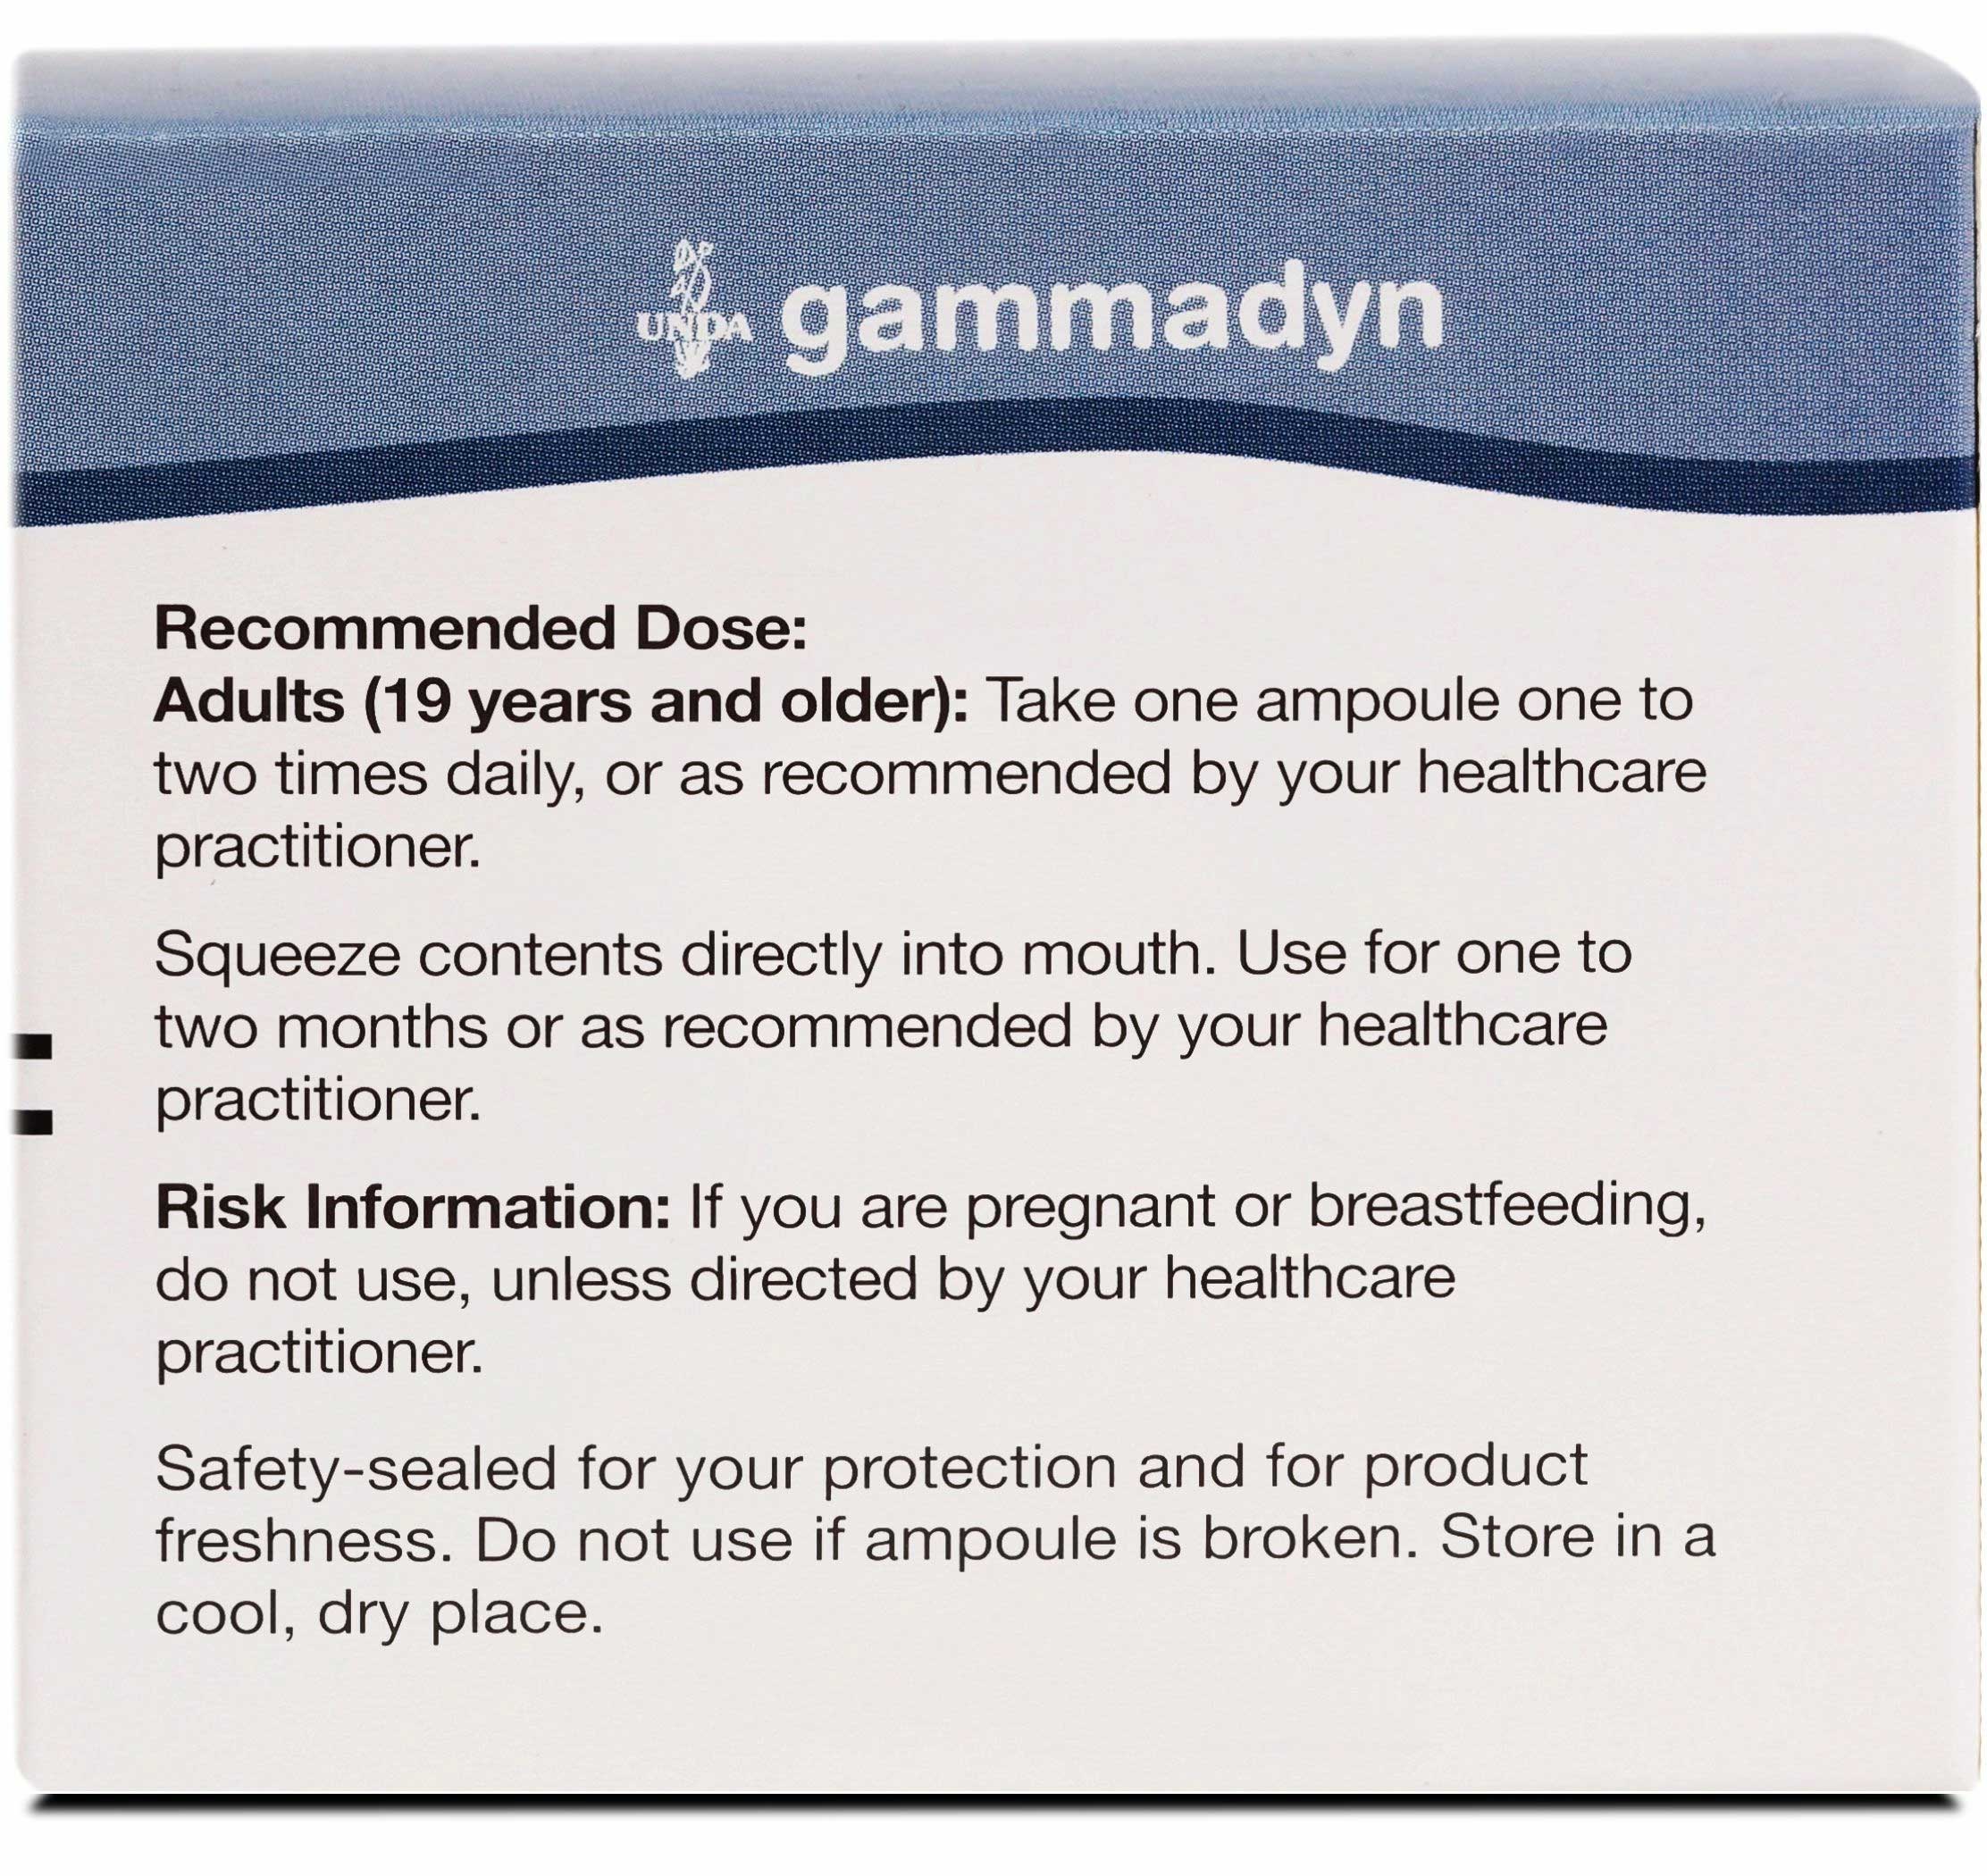 UNDA Gammadyn Li Ingredients 